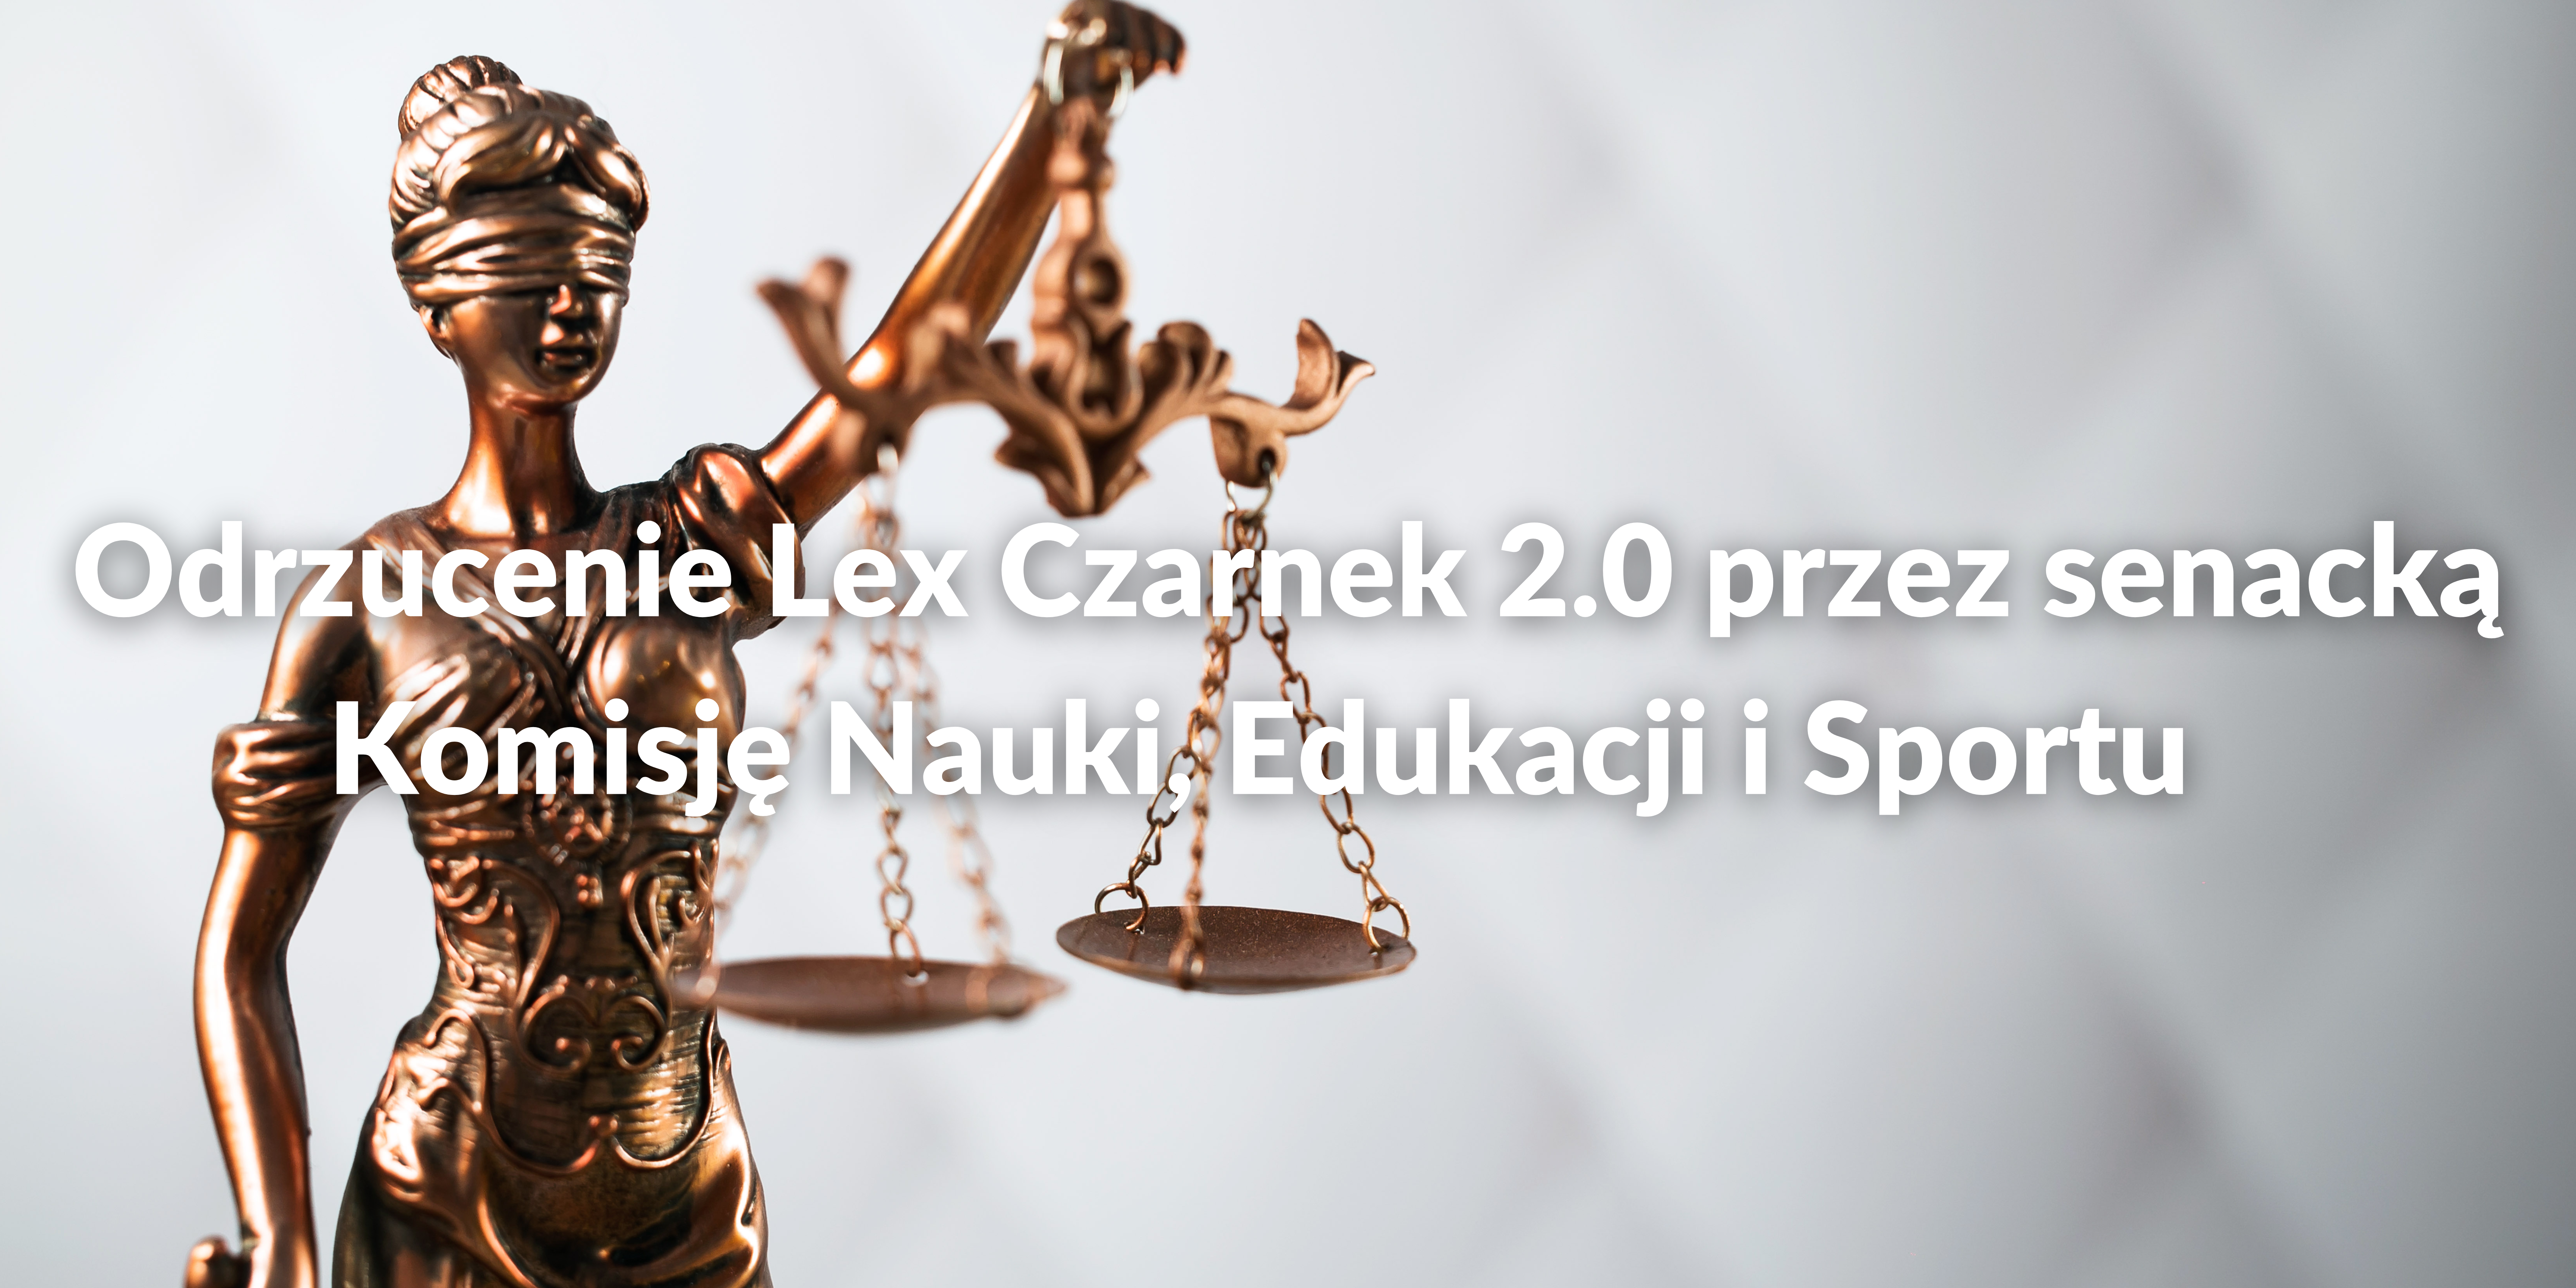 Odrzucenie Lex Czarnek 2.0 przez senacką Komisję Nauki, Edukacji i Sportu